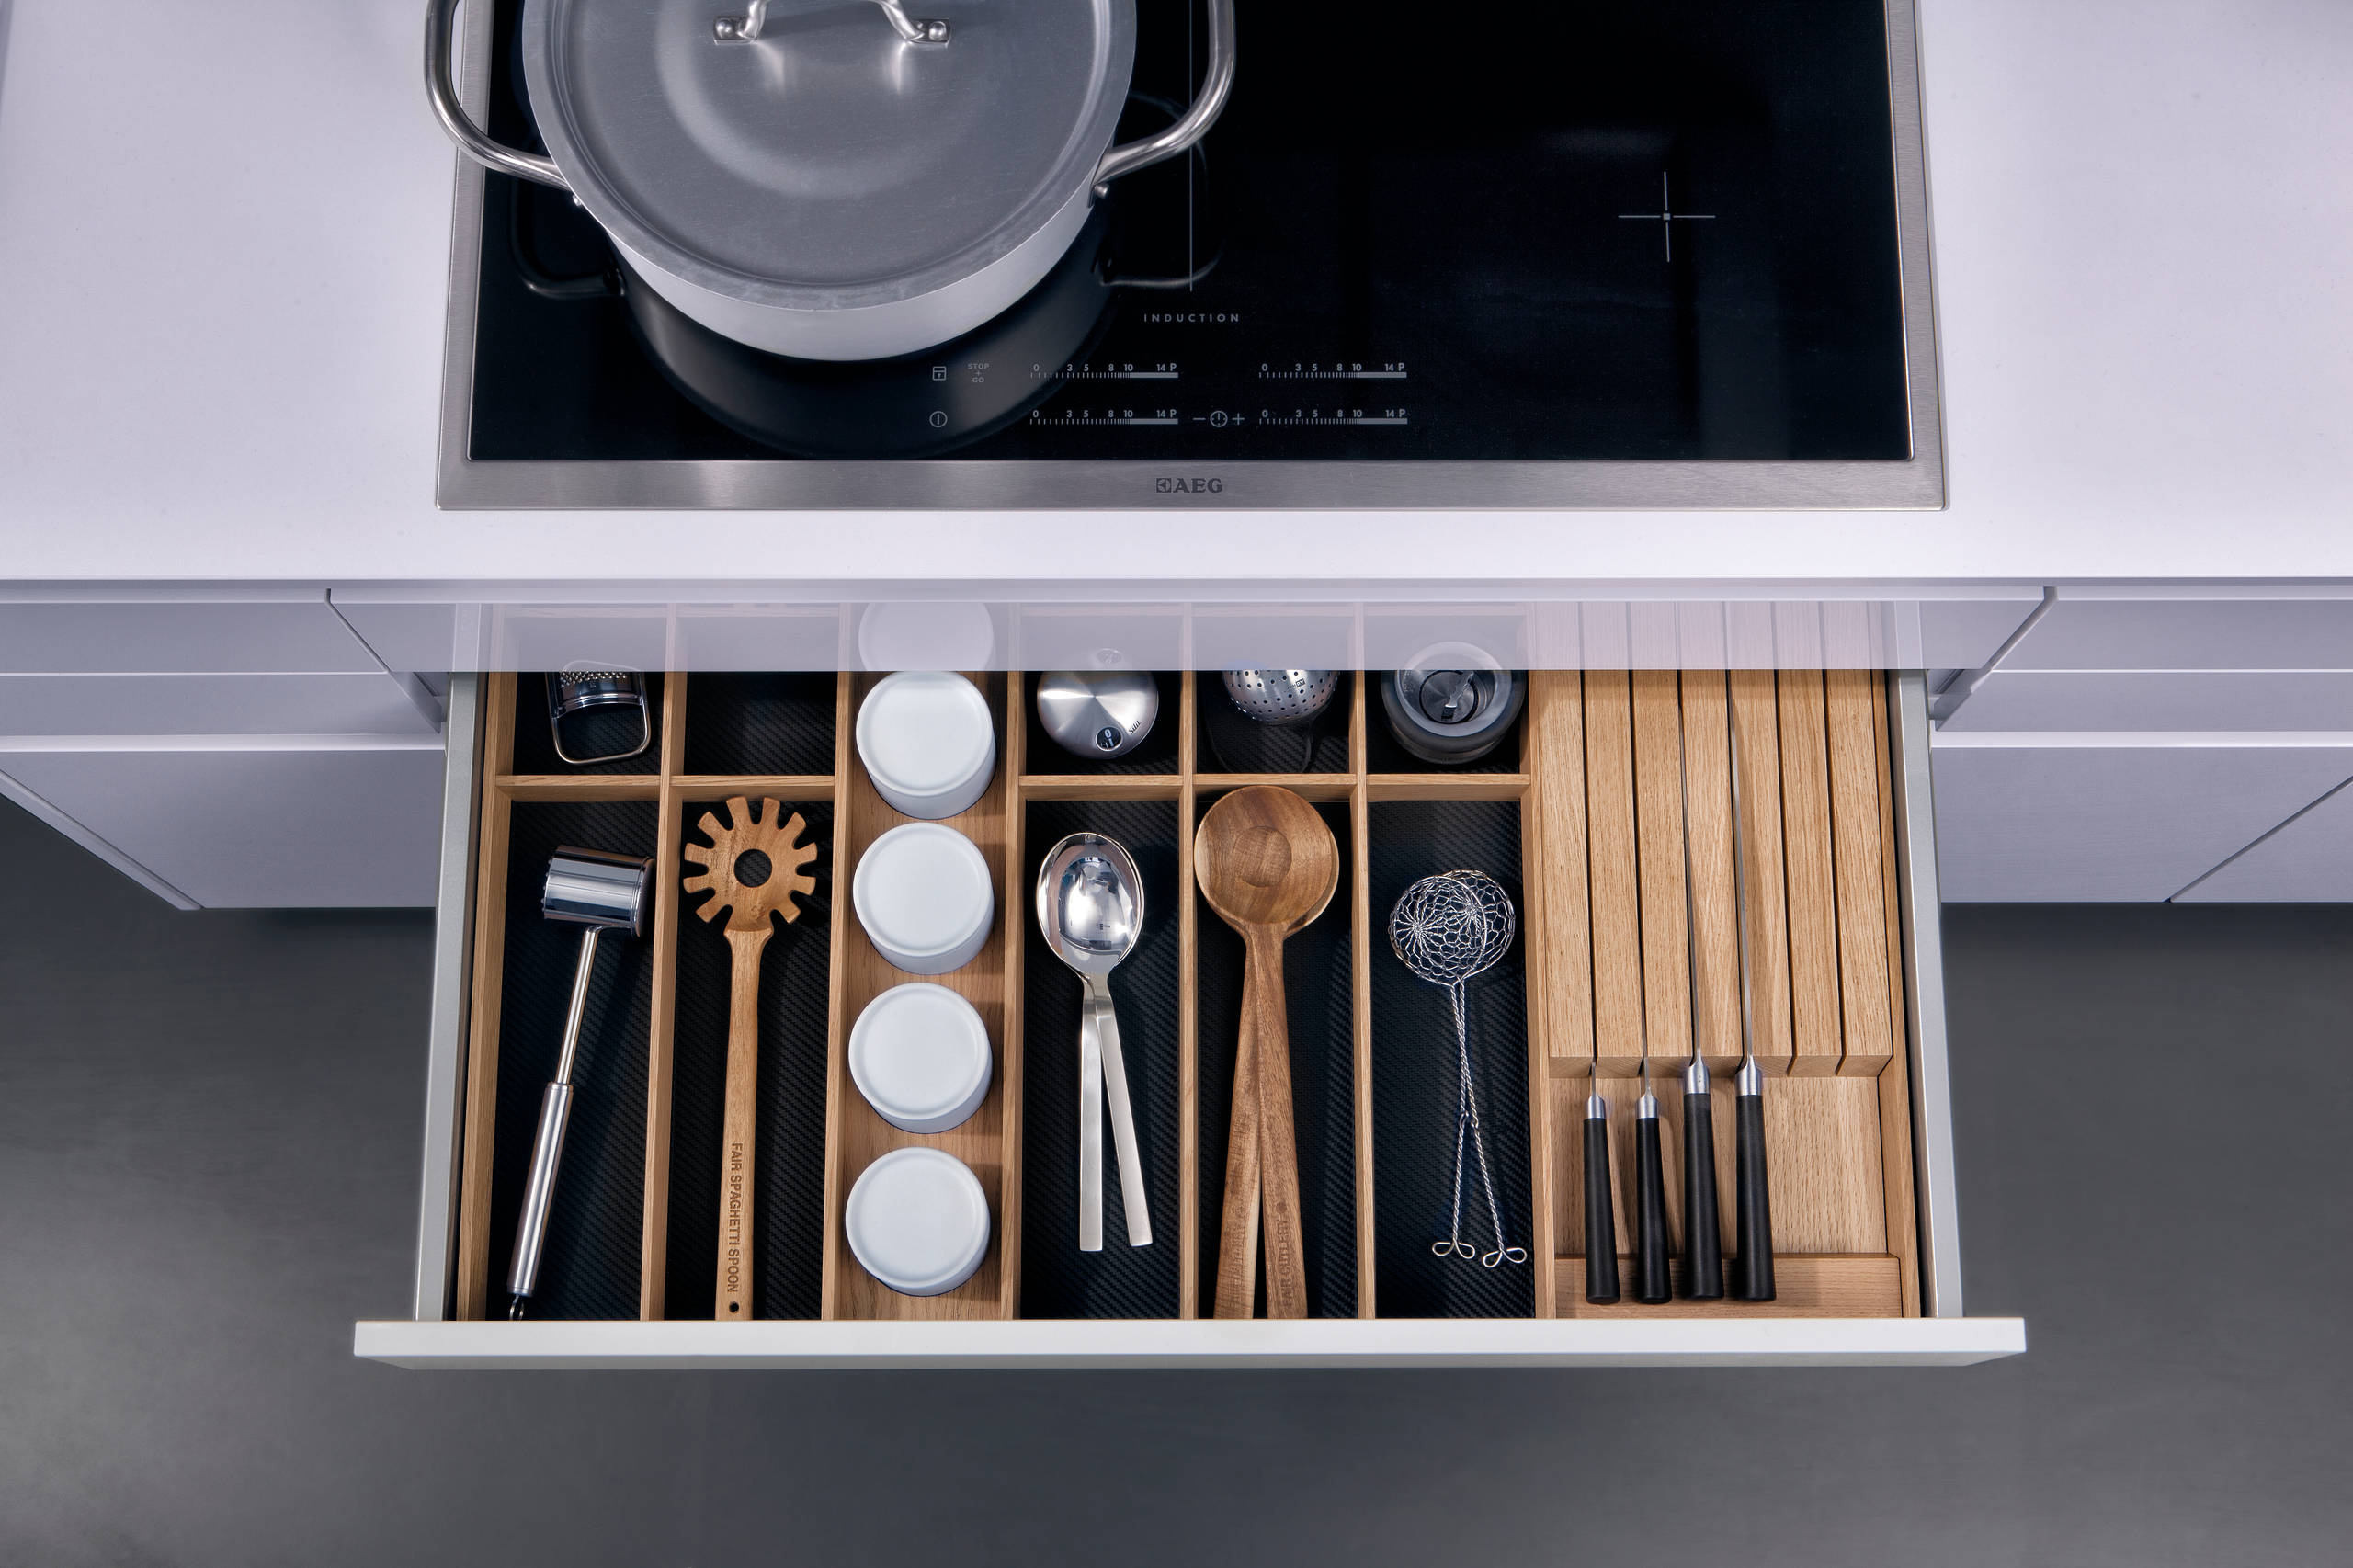 Tricks und Tipps für Organisation der Küchen Schubladen